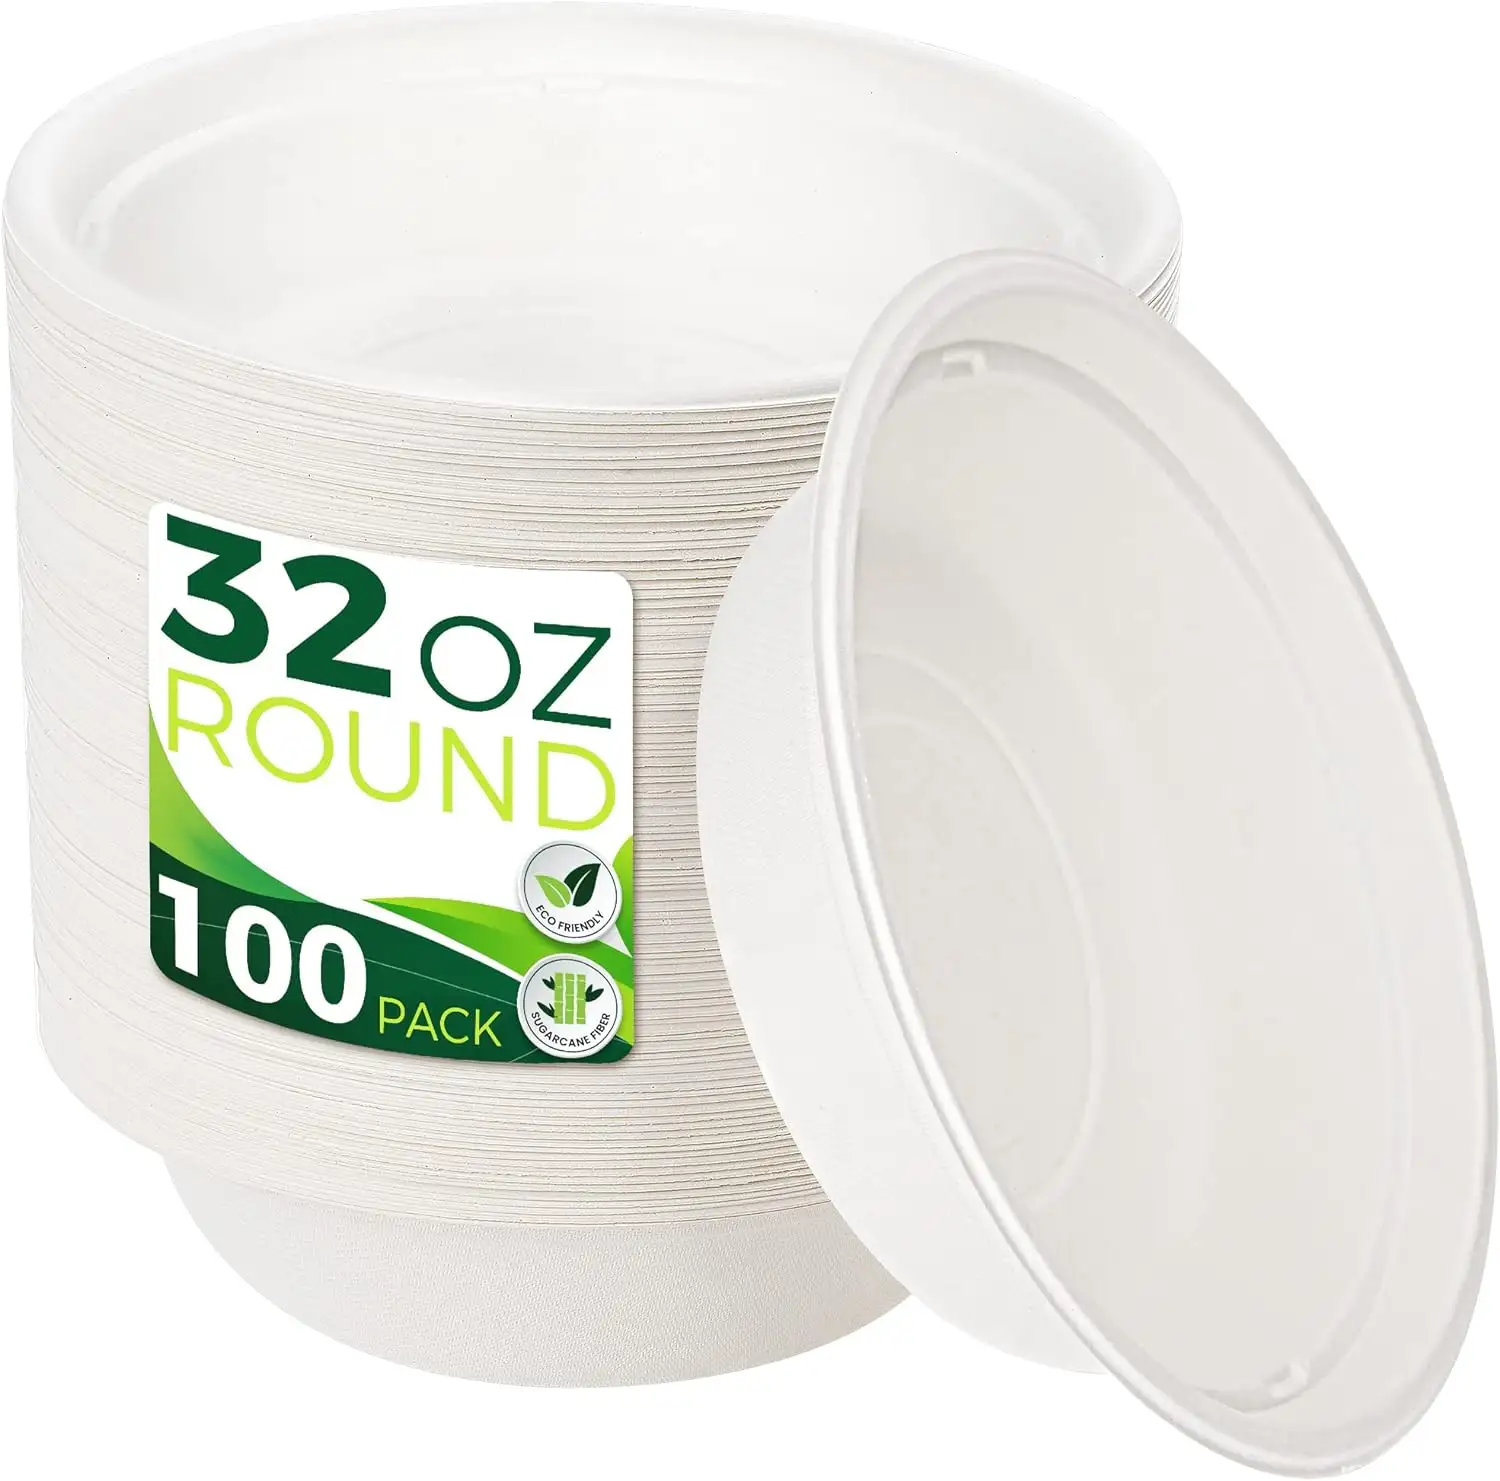 無料サンプル100% 堆肥化可能な32オンスの紙ボウルホットスープやミルクシリアルに最適な頑丈な使い捨てボウル